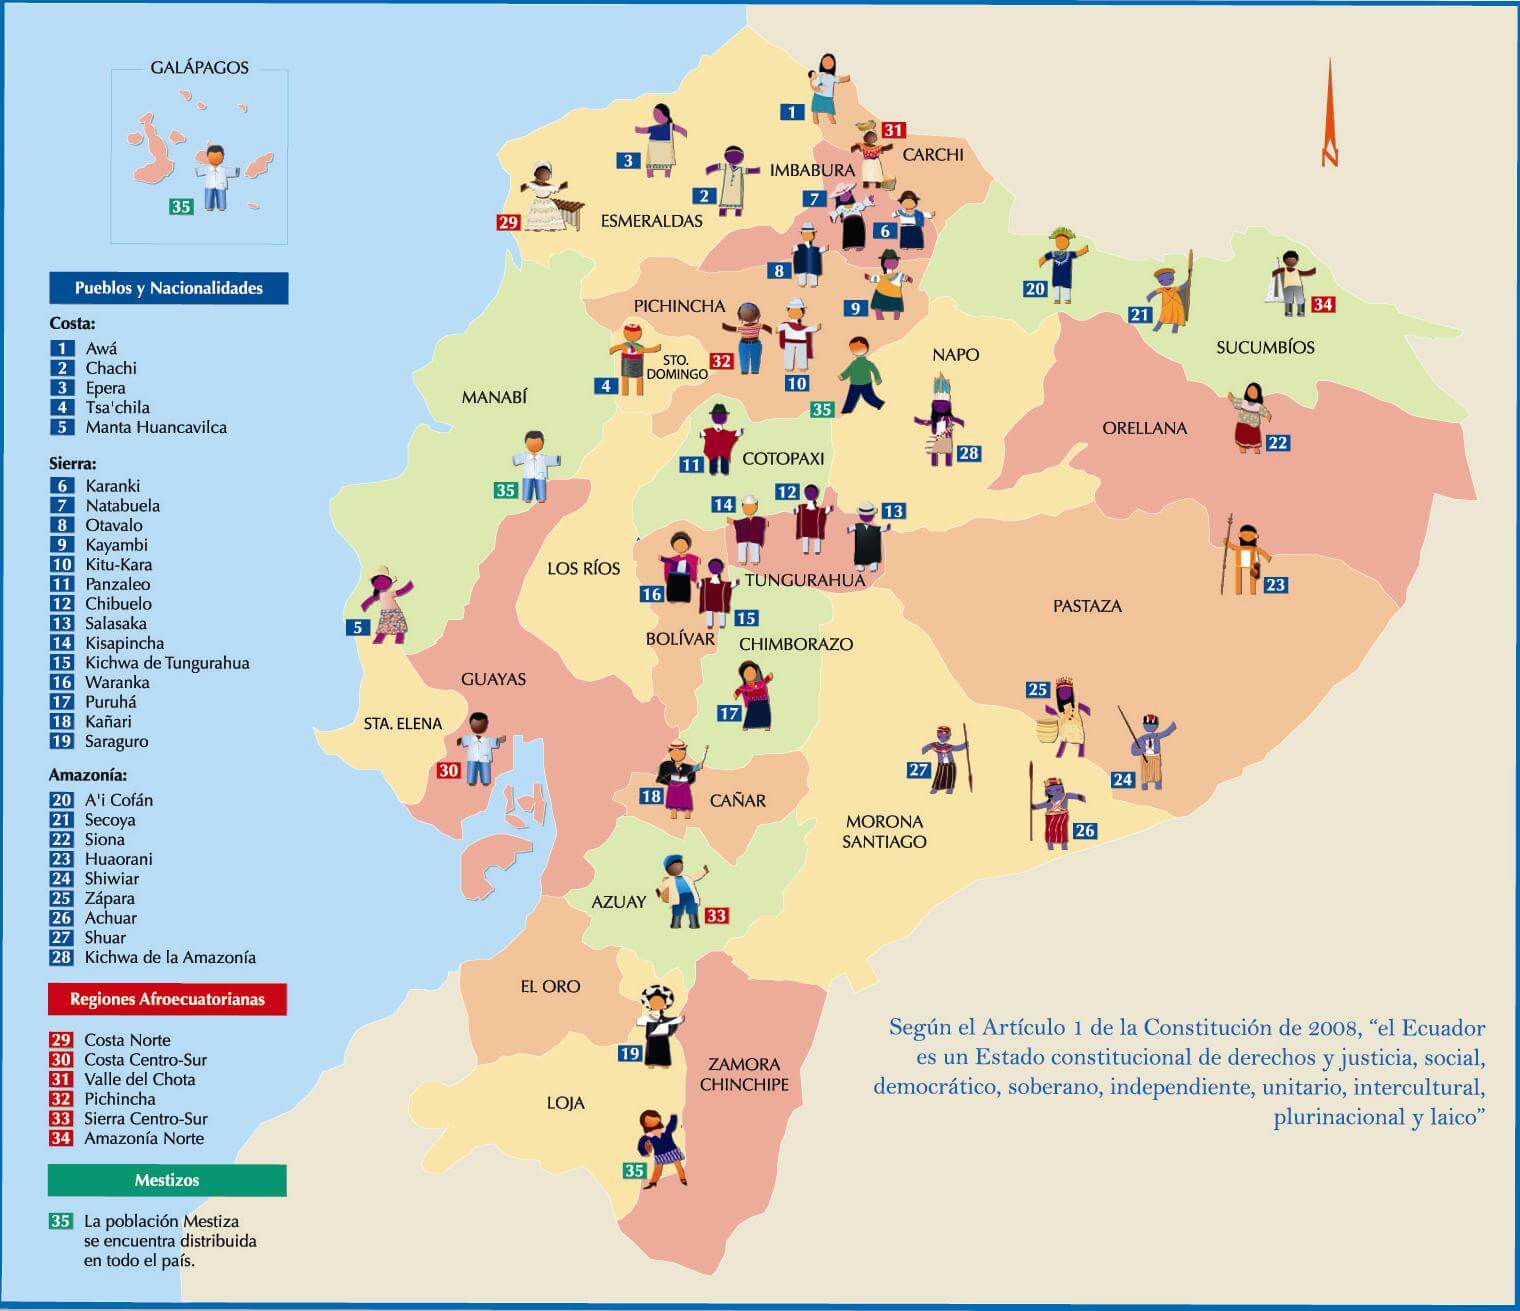 Ethnographic Map of Ecuador